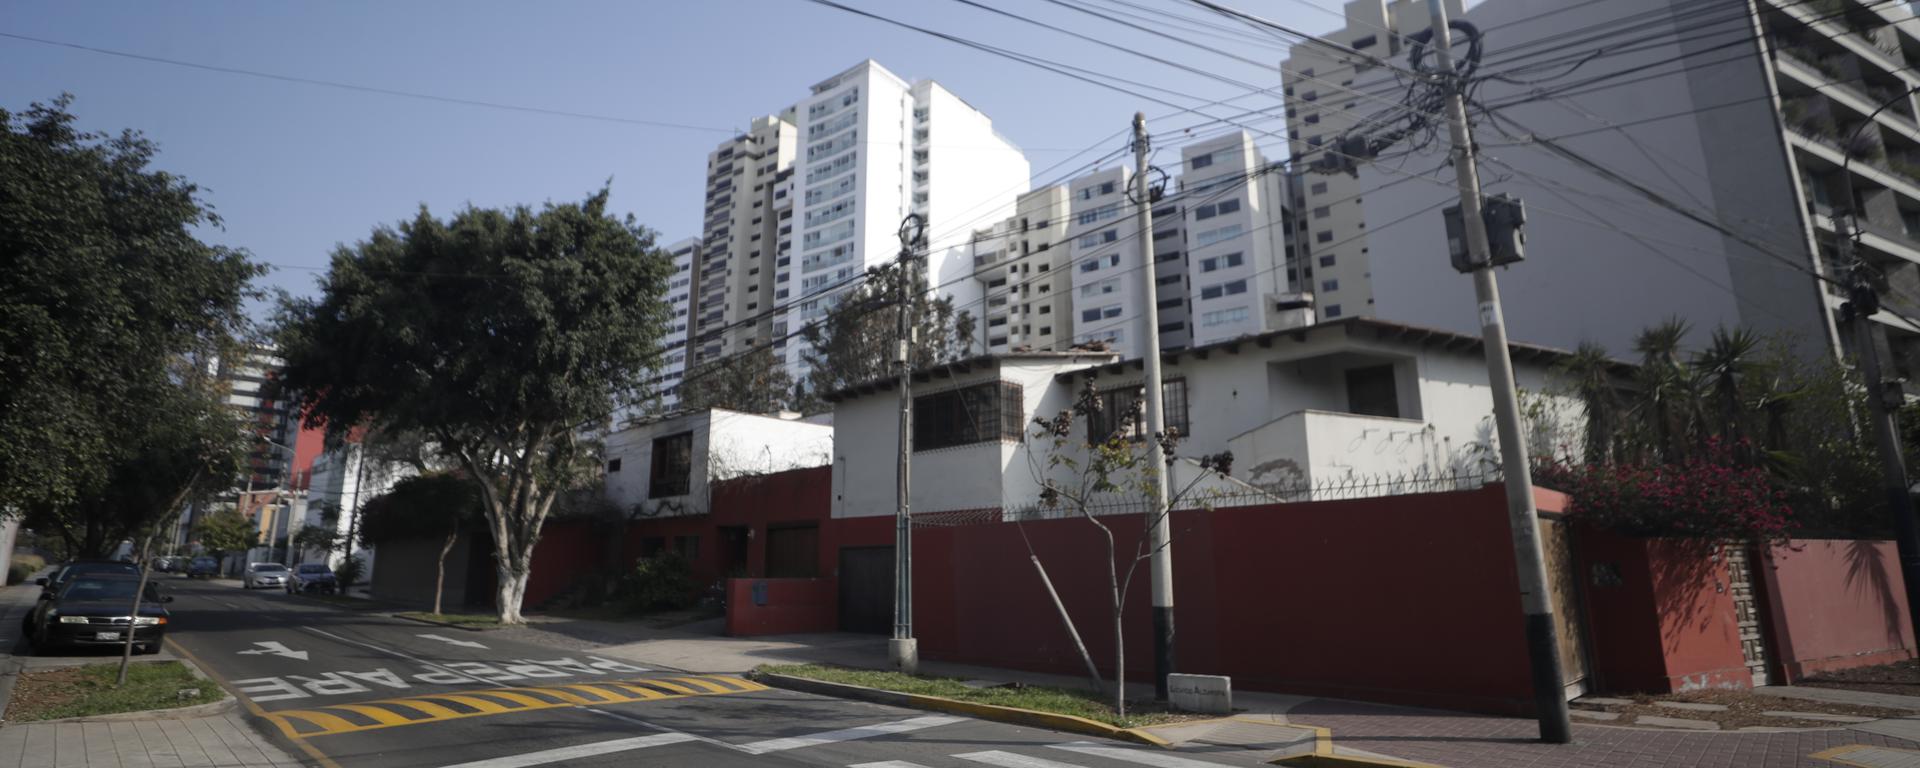 Regidores de San Isidro buscan aprobar ordenanza para construir edificios con el doble de pisos permitidos